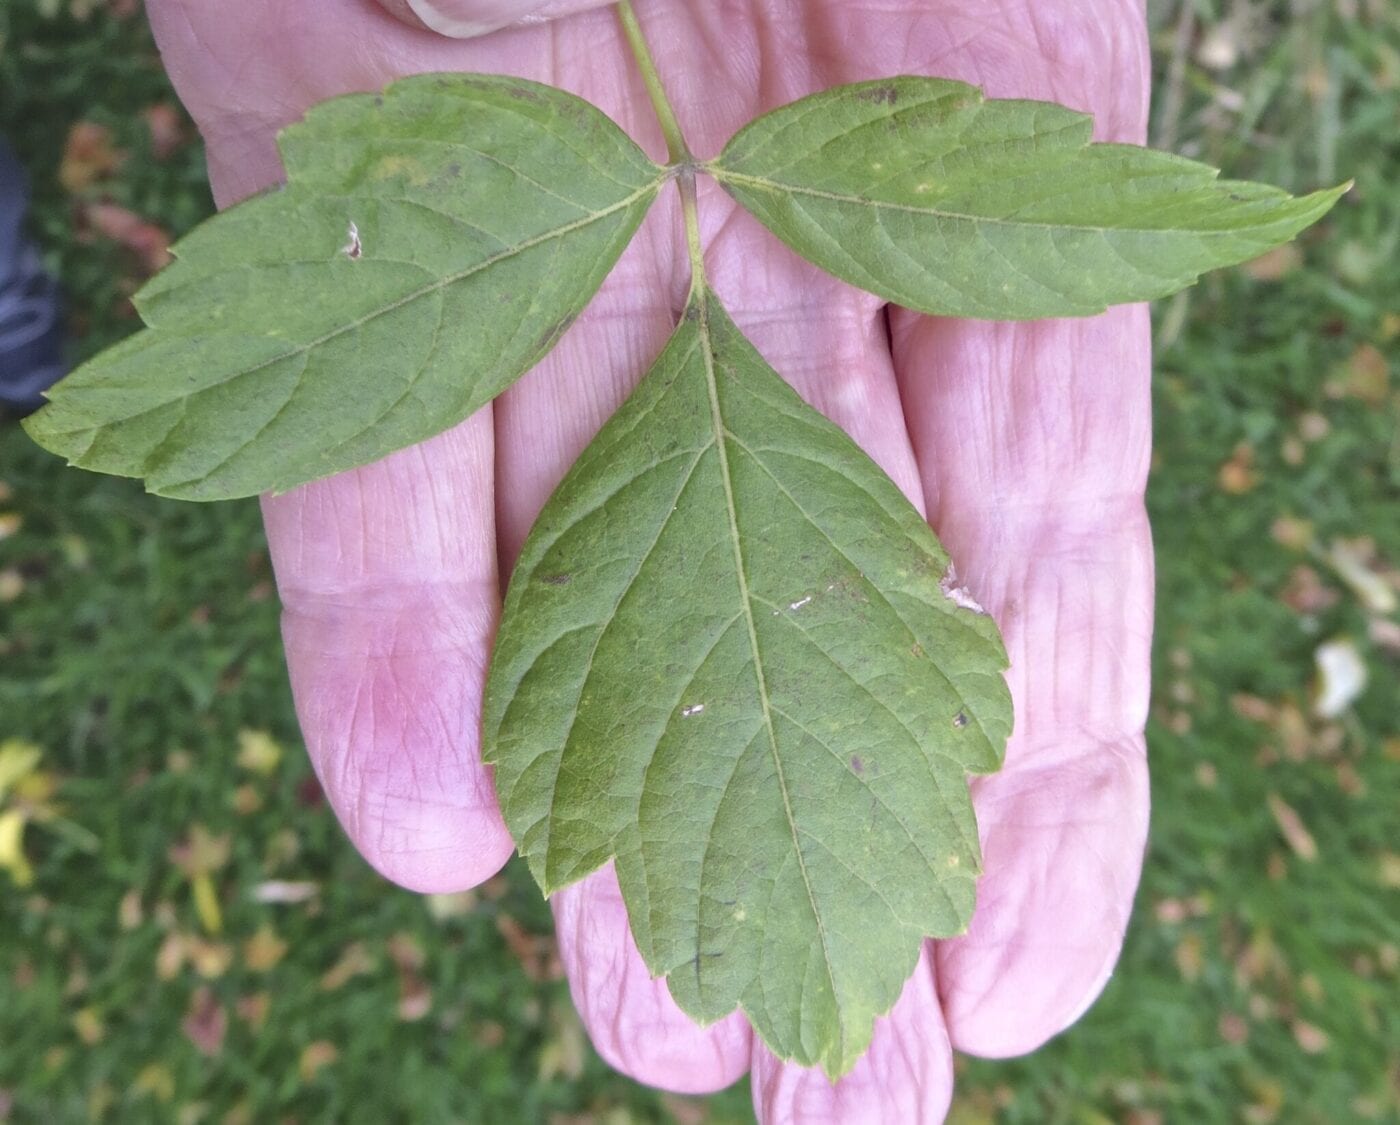 Box Elder pinnate leaf